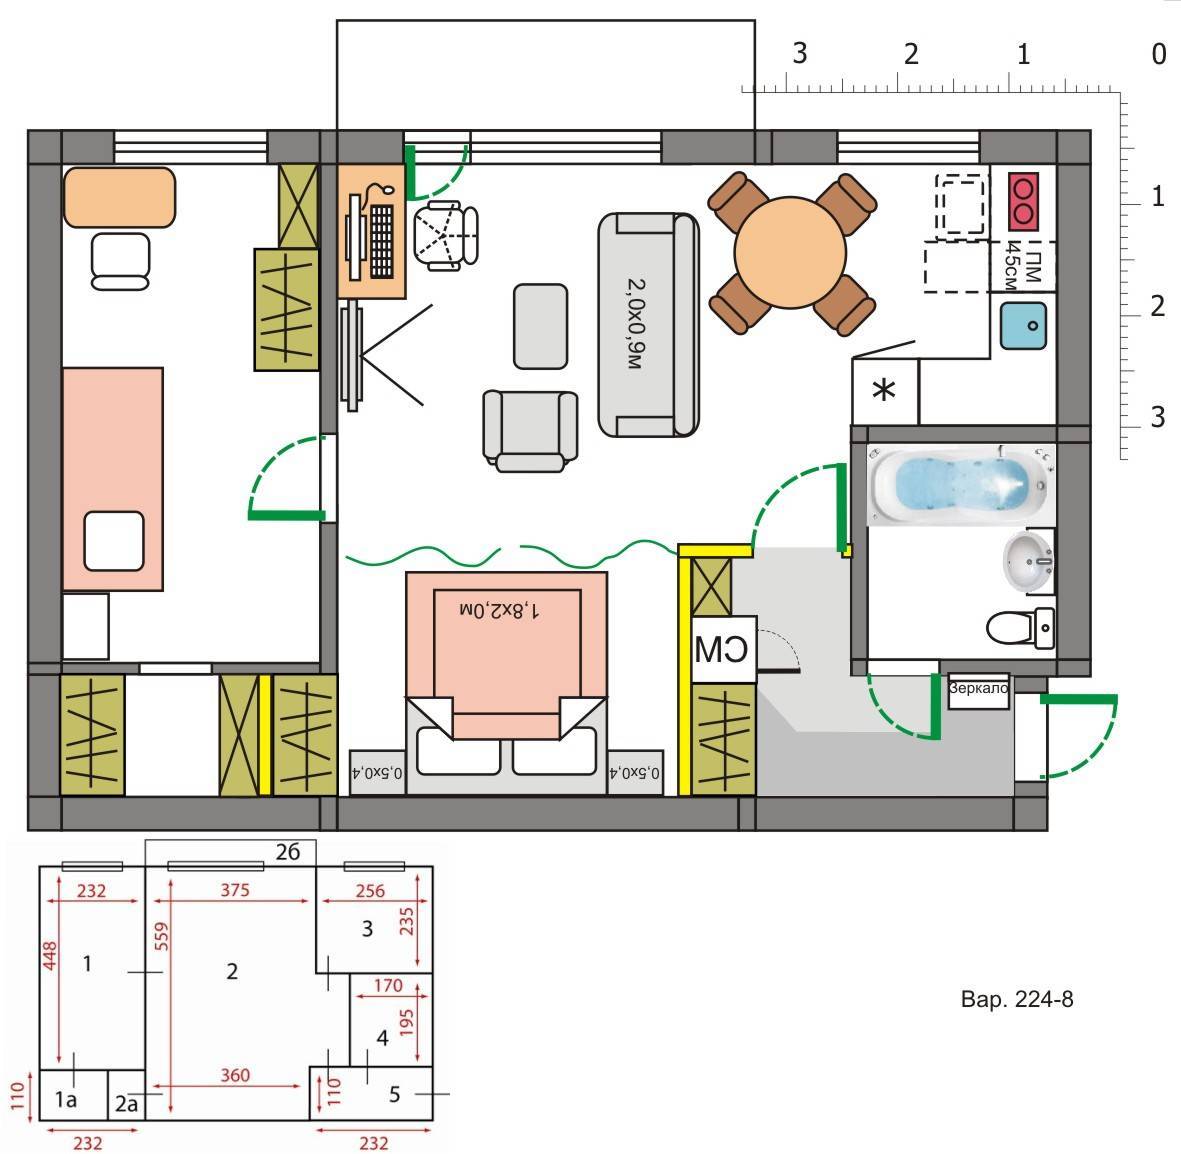 Дизайн квартиры хрущевки: можно ли обойтись без перепланировки?